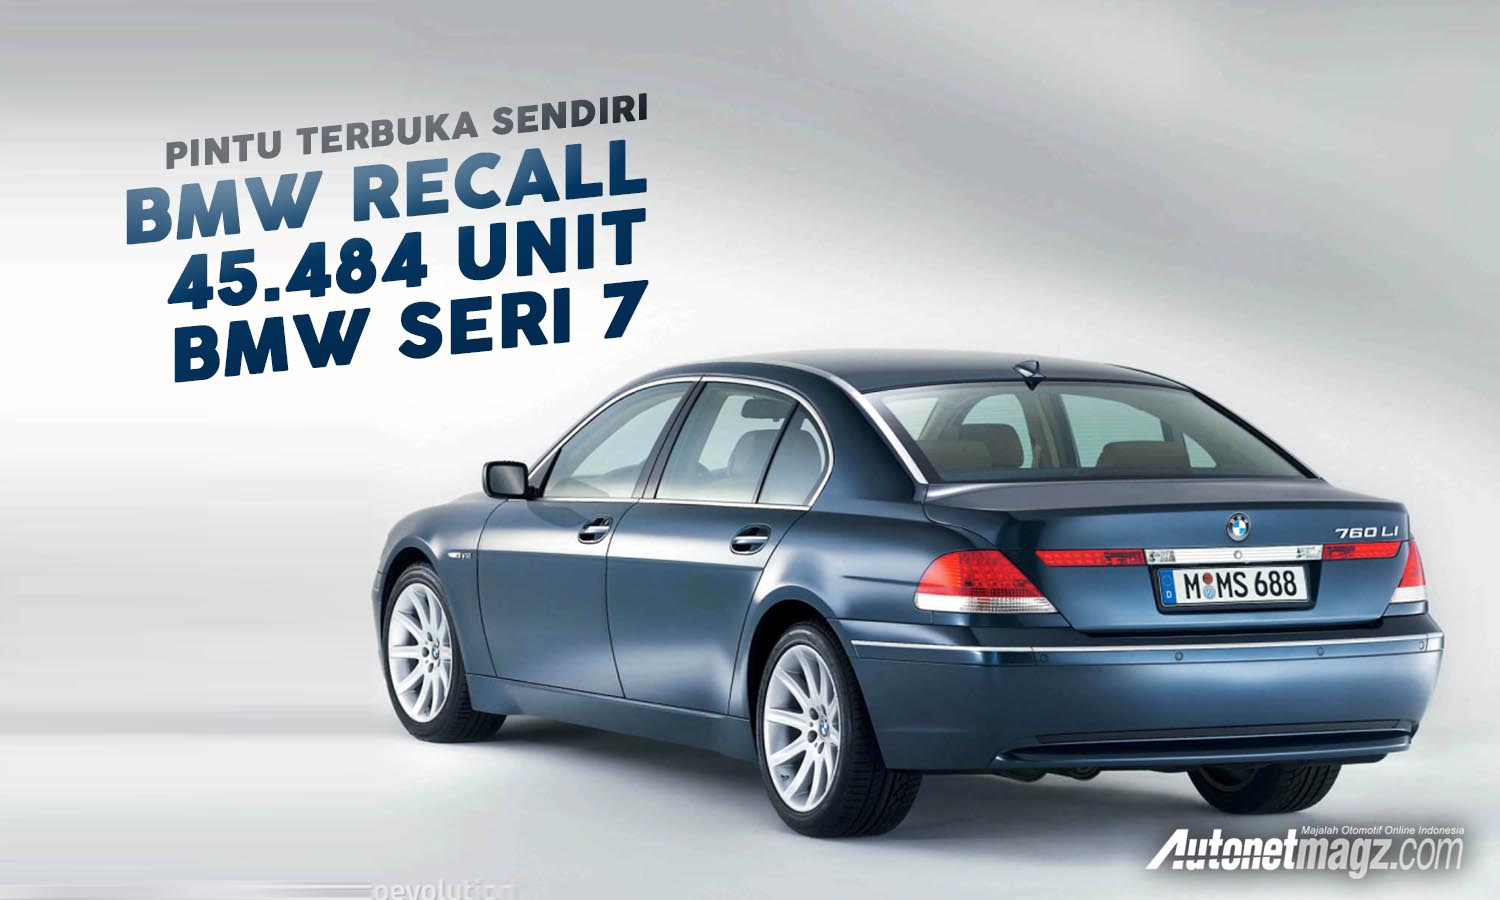 Berita, bmw recall: BMW Recall 45.484 Unit BMW Seri 7 Terkait Masalah Pintu